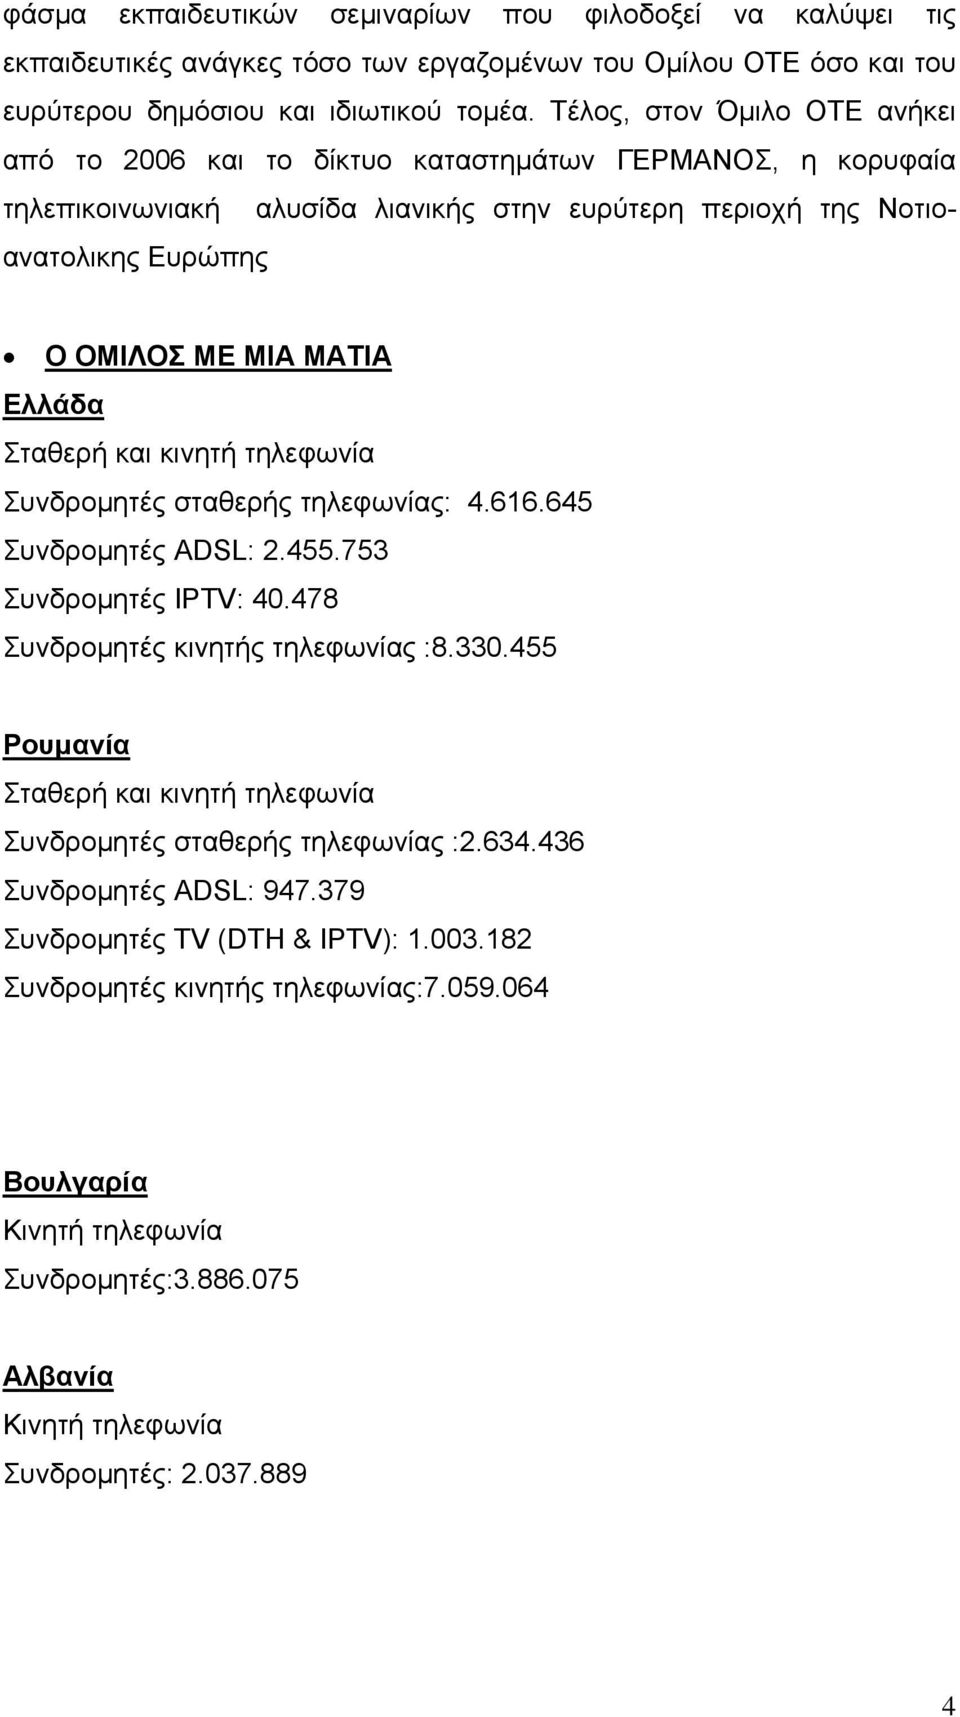 Ελλάδα Σταθερή και κινητή τηλεφωνία Συνδρομητές σταθερής τηλεφωνίας: 4.616.645 Συνδρομητές ADSL: 2.455.753 Συνδρομητές IPTV: 40.478 Συνδρομητές κινητής τηλεφωνίας :8.330.